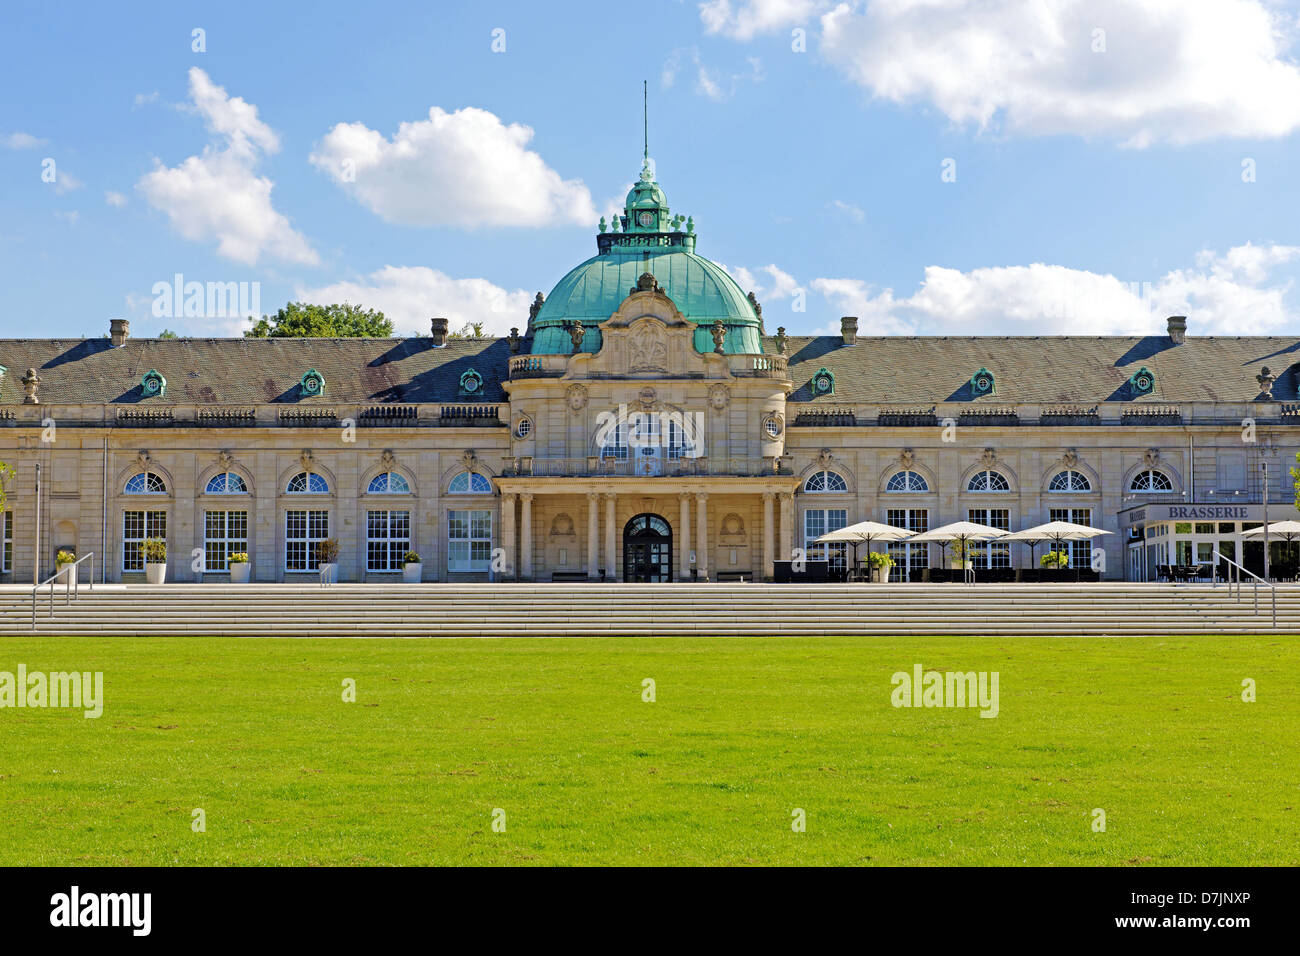 L'Imperial Palace dans le parc de la station thermale de Bad Oeynhausen, Allemagne Banque D'Images